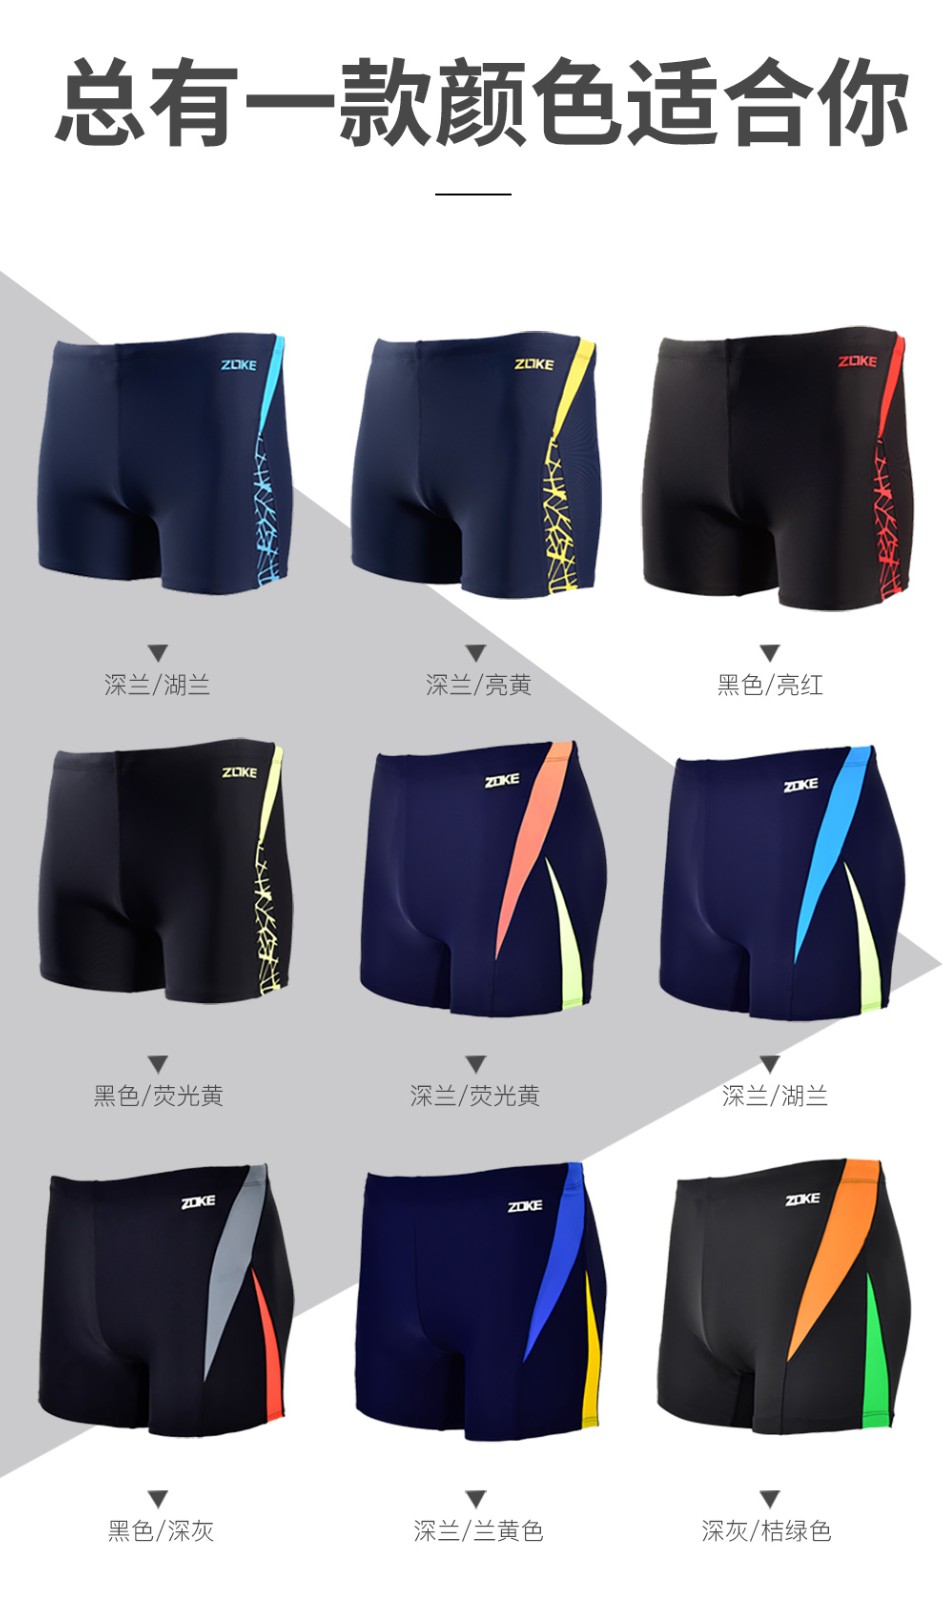 男士泳裤品牌排行榜图片